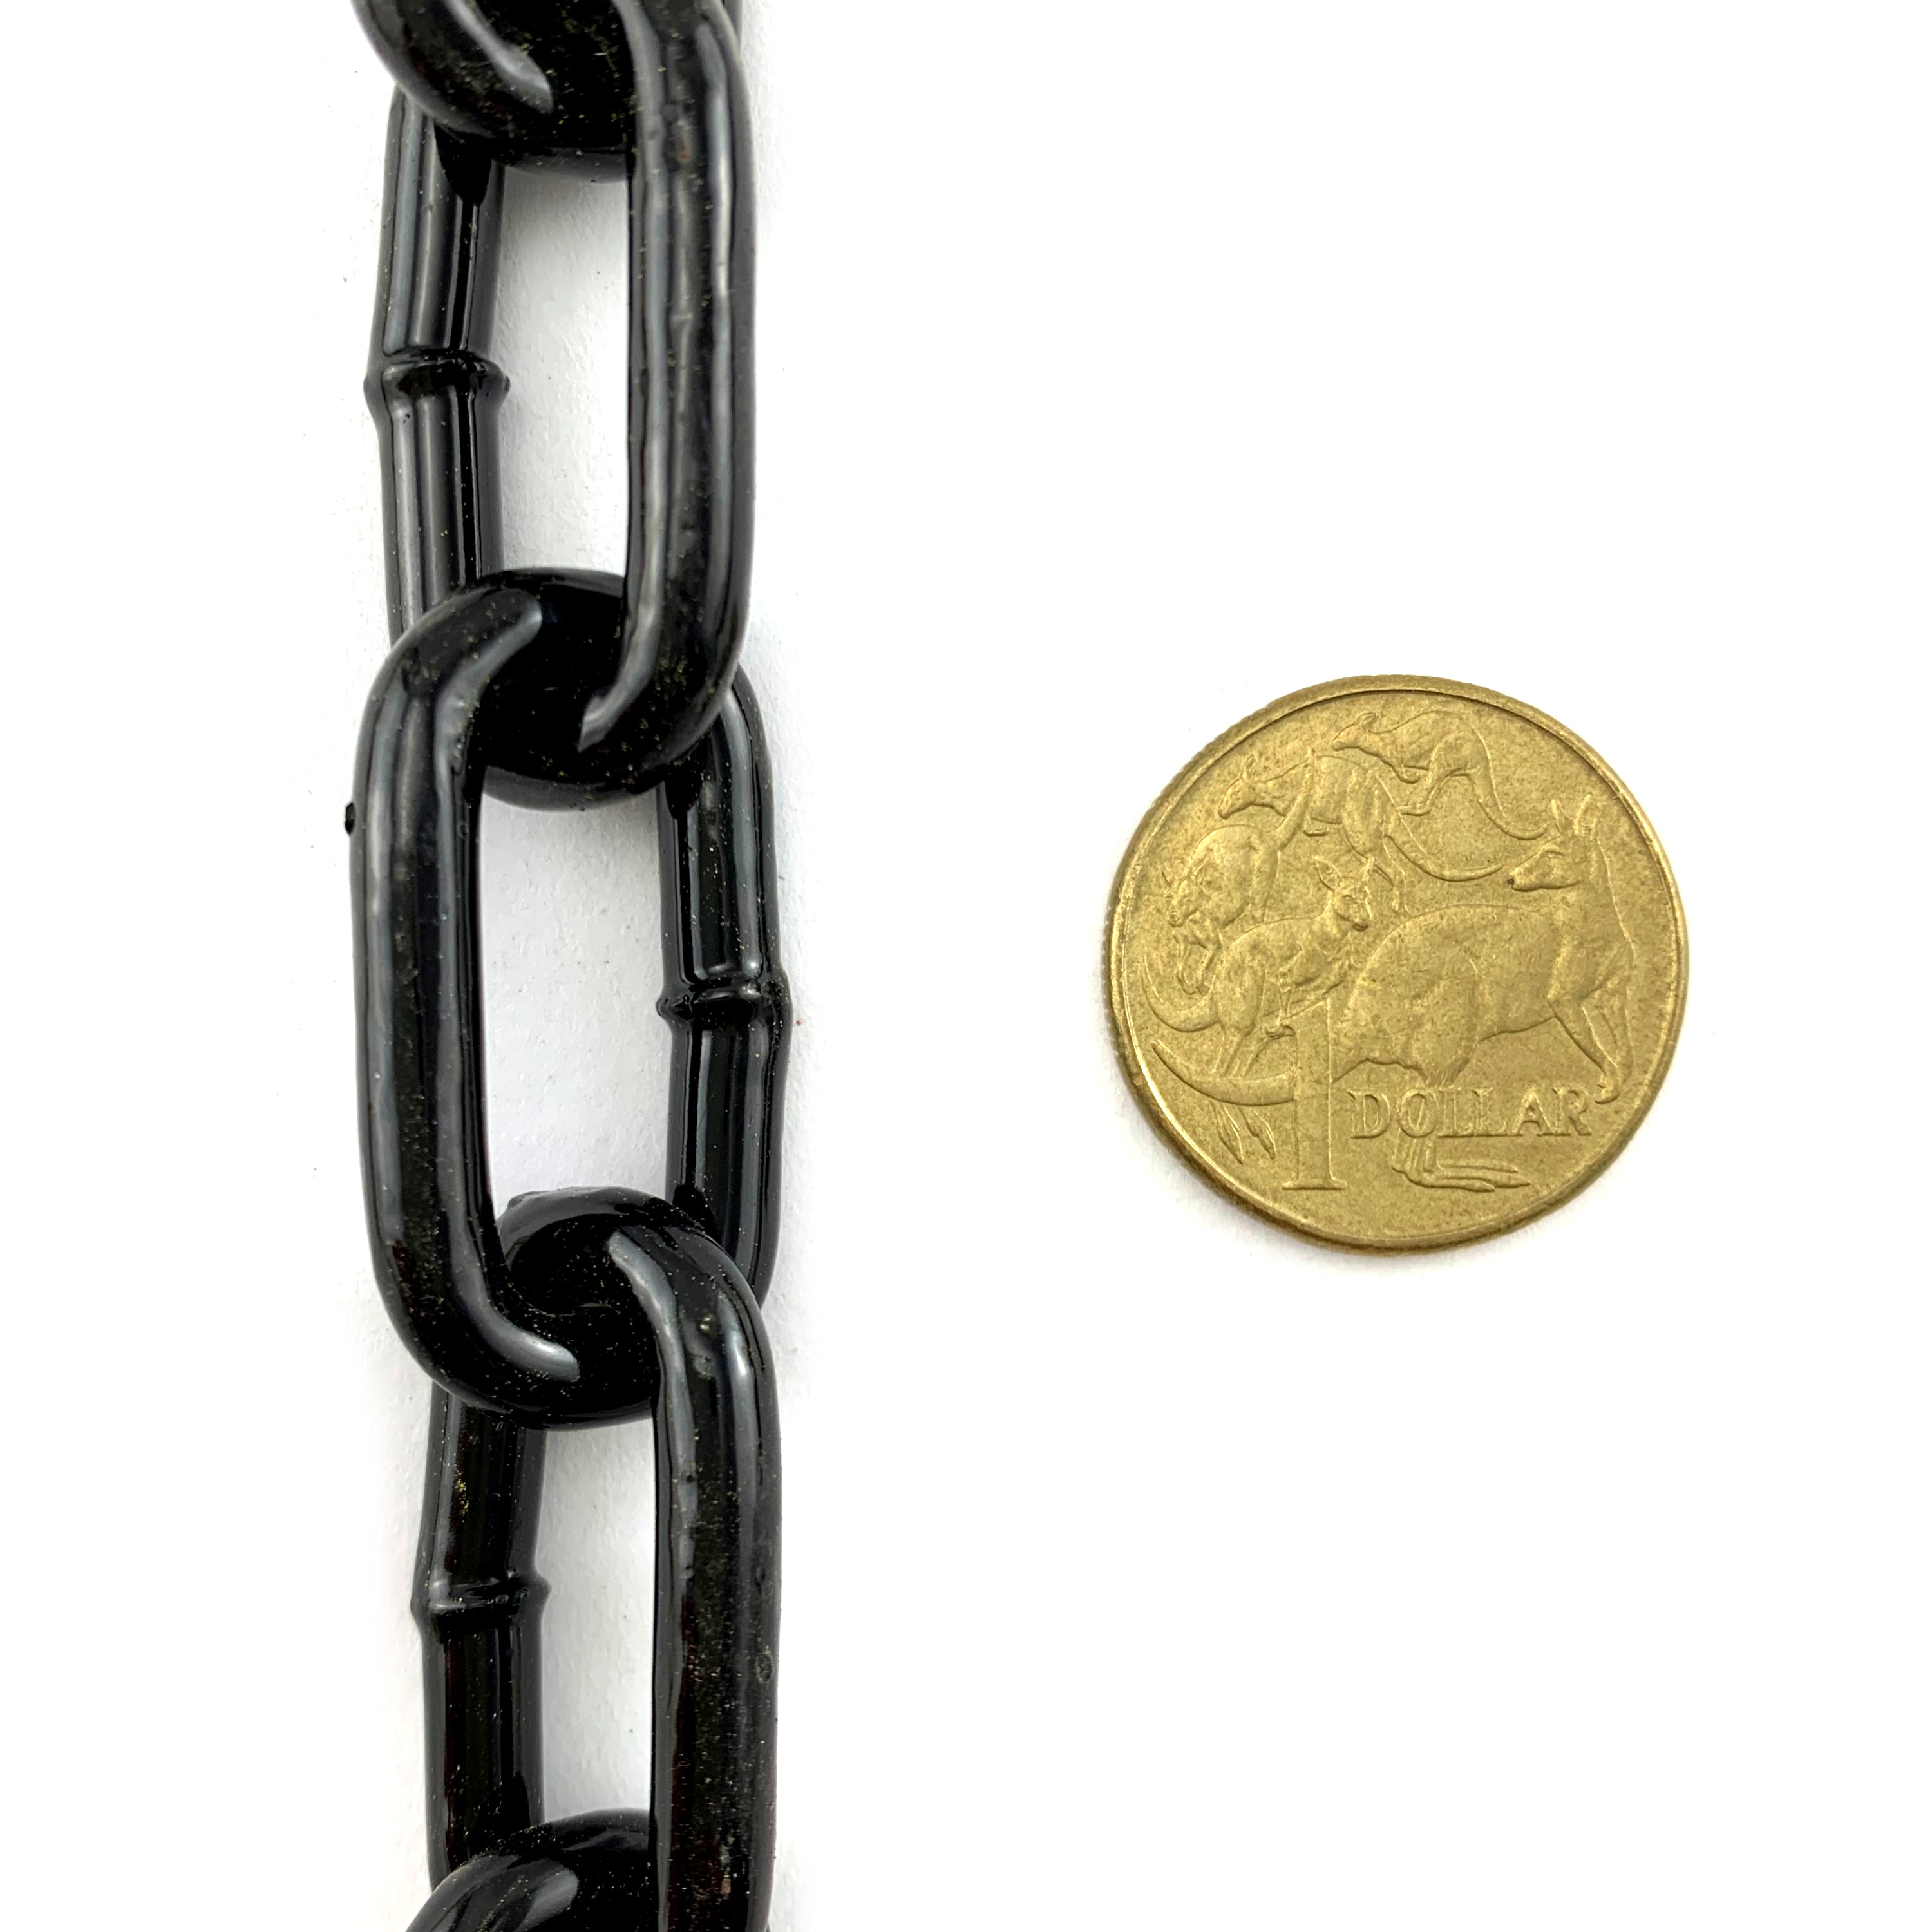 Welded Steel Chain - Black Powder Coated - 5mm x 25kg. Australia.